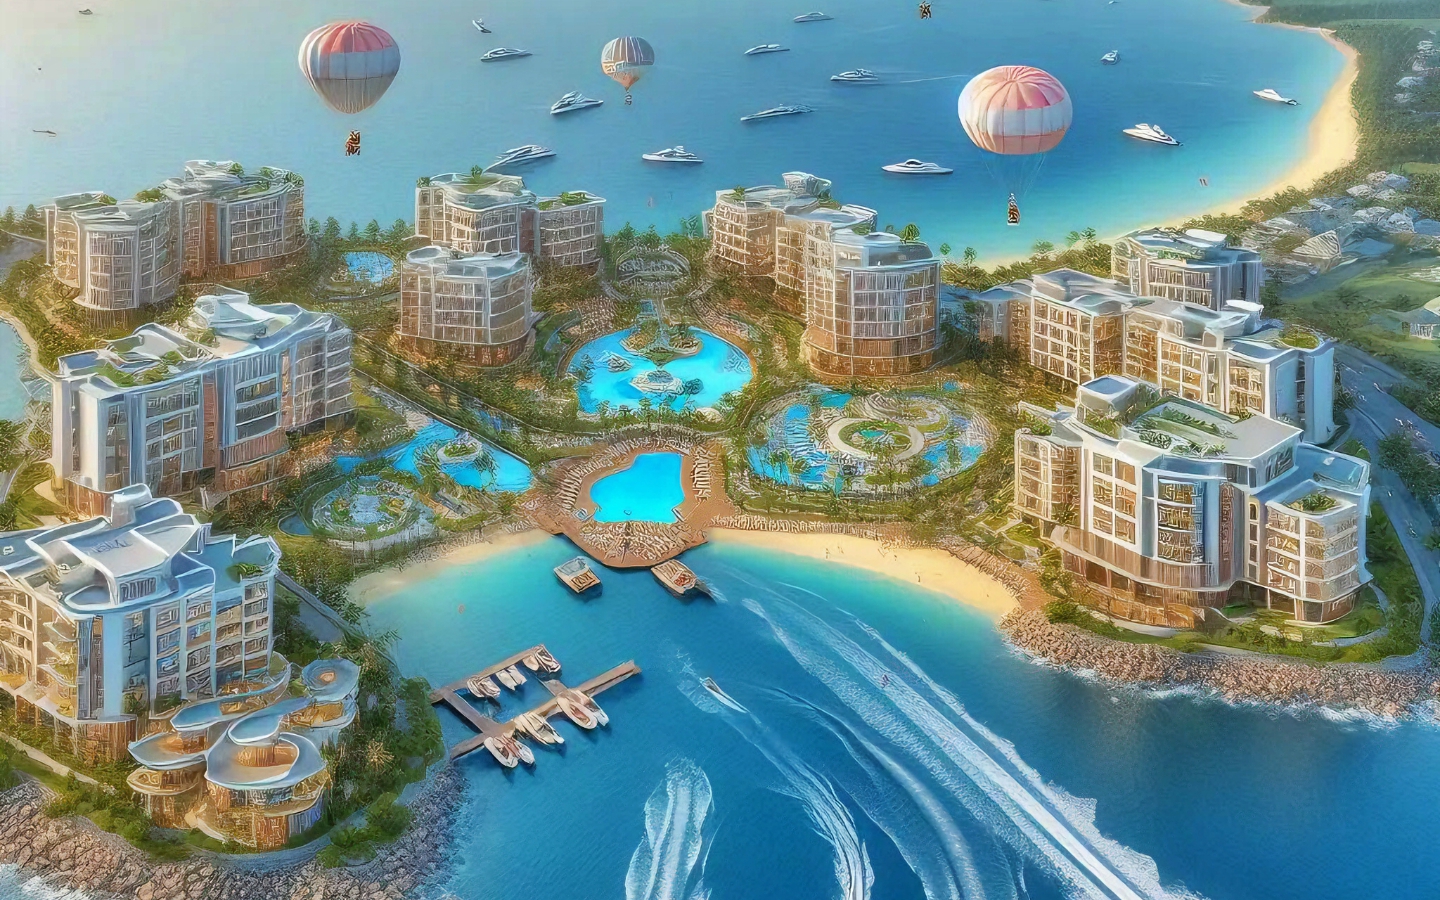 Tỉnh ven biển Việt Nam sắp 'chơi lớn' với tổ hợp nghỉ dưỡng, vui chơi giải trí cao cấp 10.000 tỷ